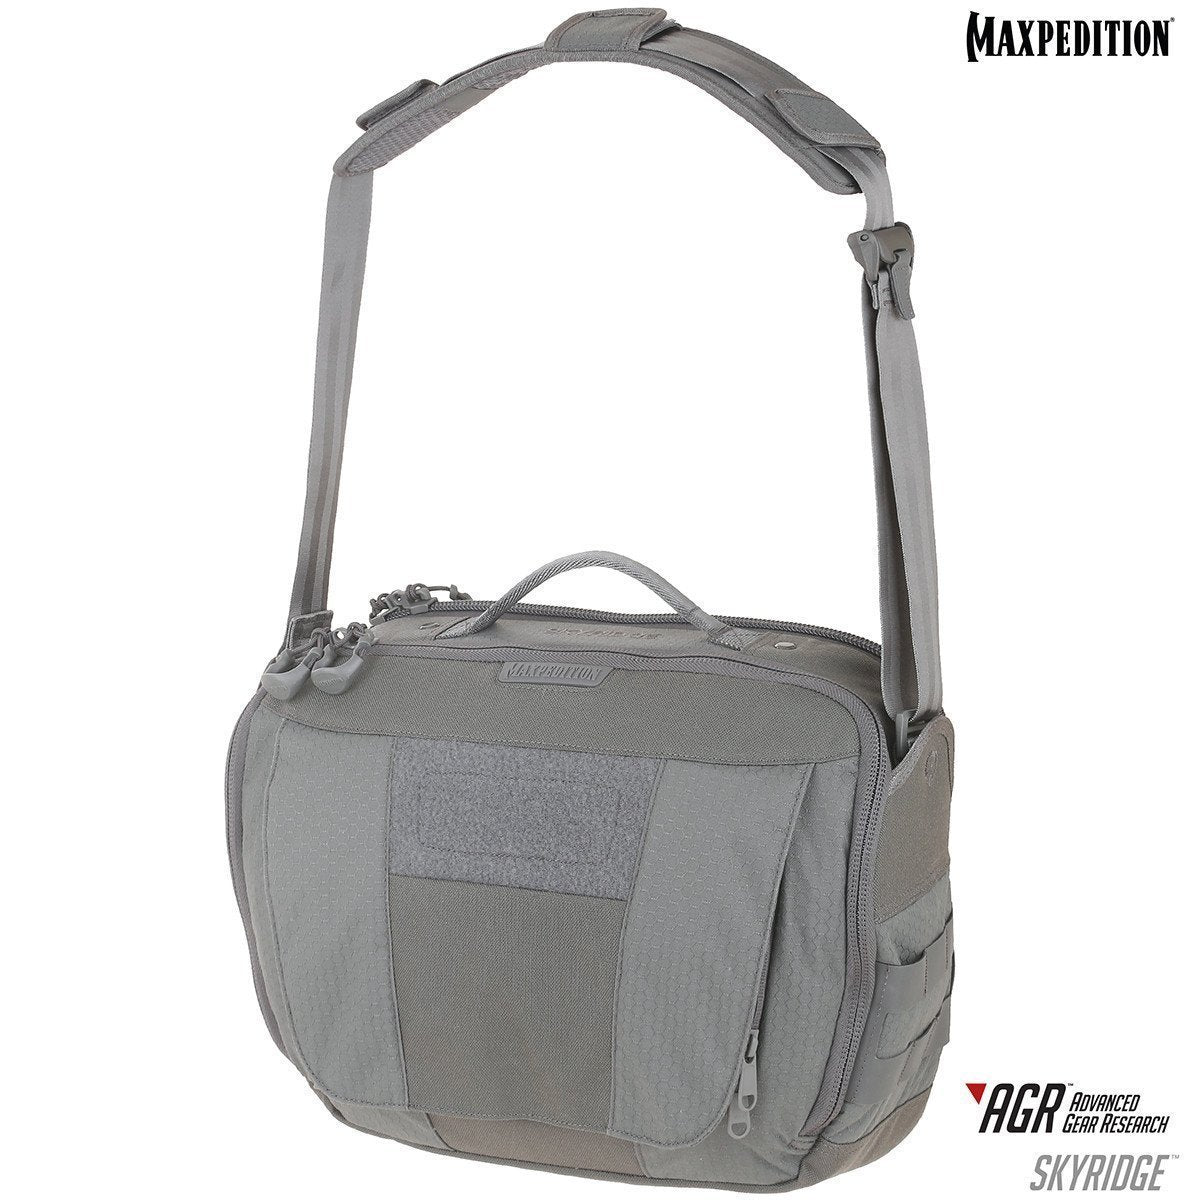 Maxpedition Skyridge Tech Messenger Bag 12.5L Gray Tactical Distributors Ltd New Zealand